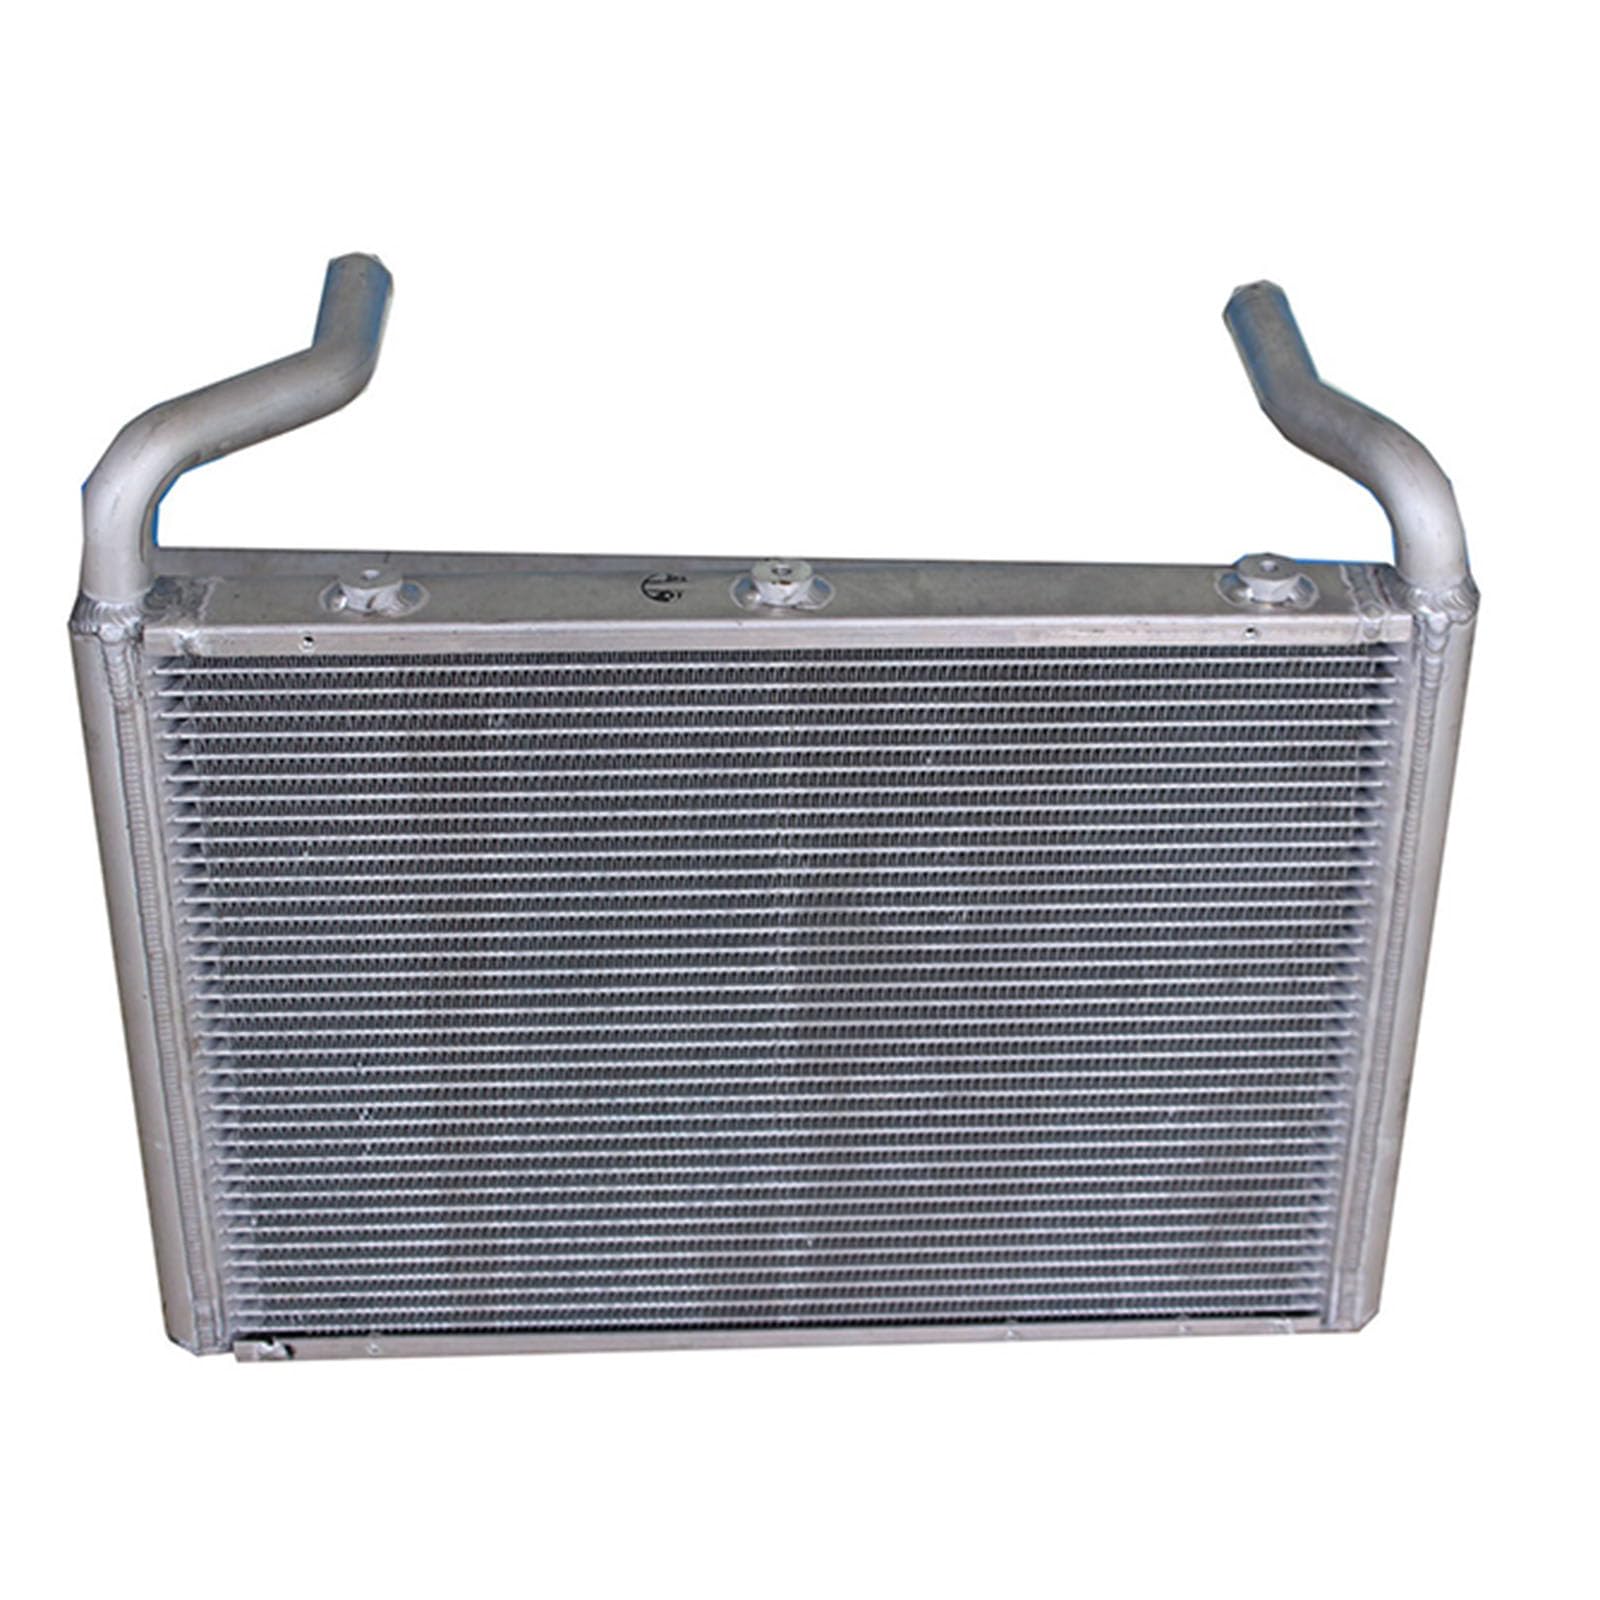 A&S Construction Machinery Co., Ltd. suministra todo tipo de radiadores.-4